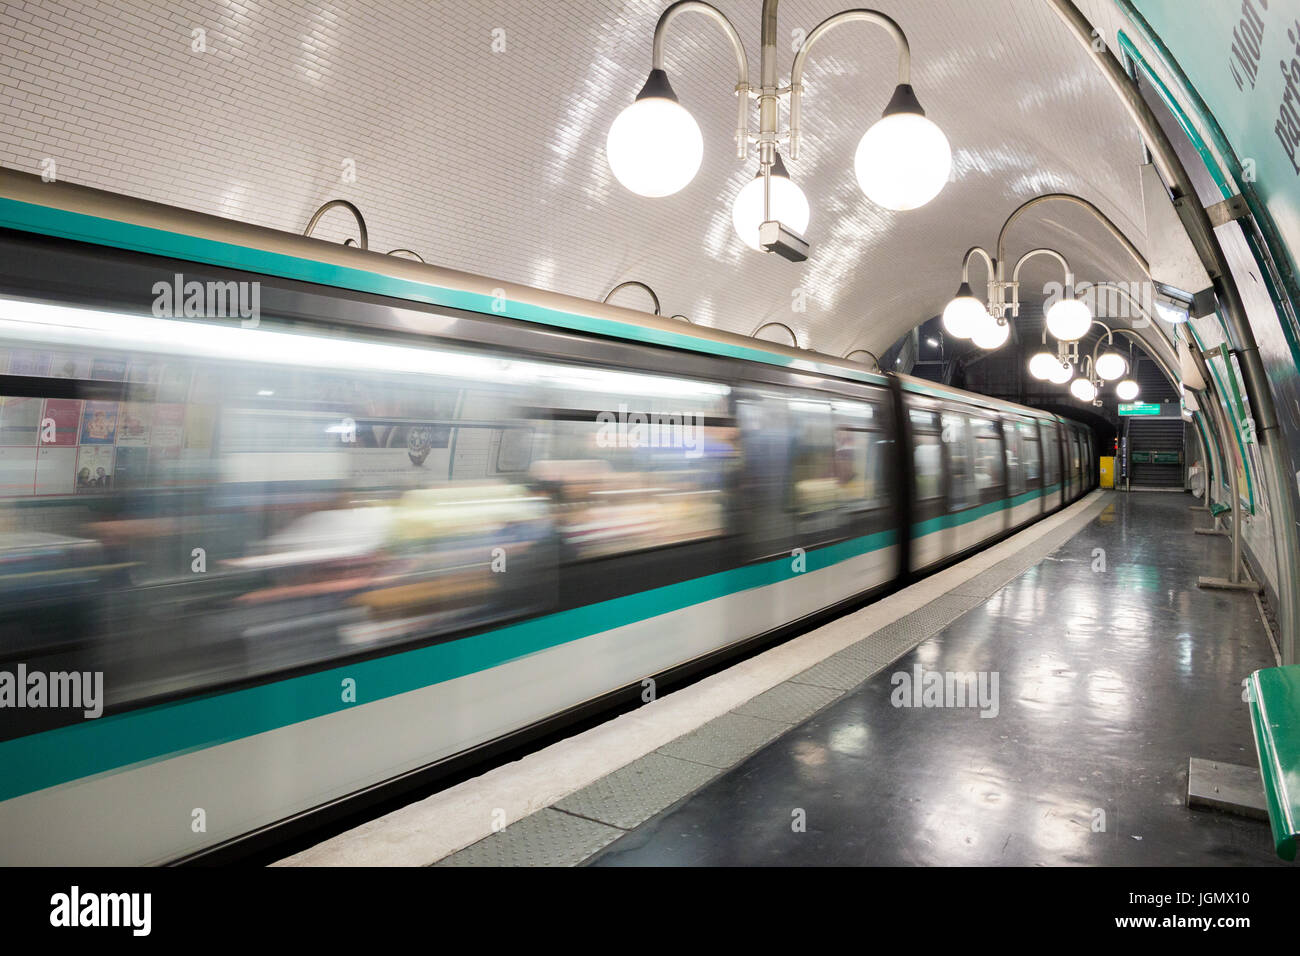 PARIS - 19. Juni 2015: Metro Zug eine Paris Metro-Station. Paris Metro ist das 2. größte u-Bahn-System weltweit durch die Anzahl der Stationen (30 Stockfoto